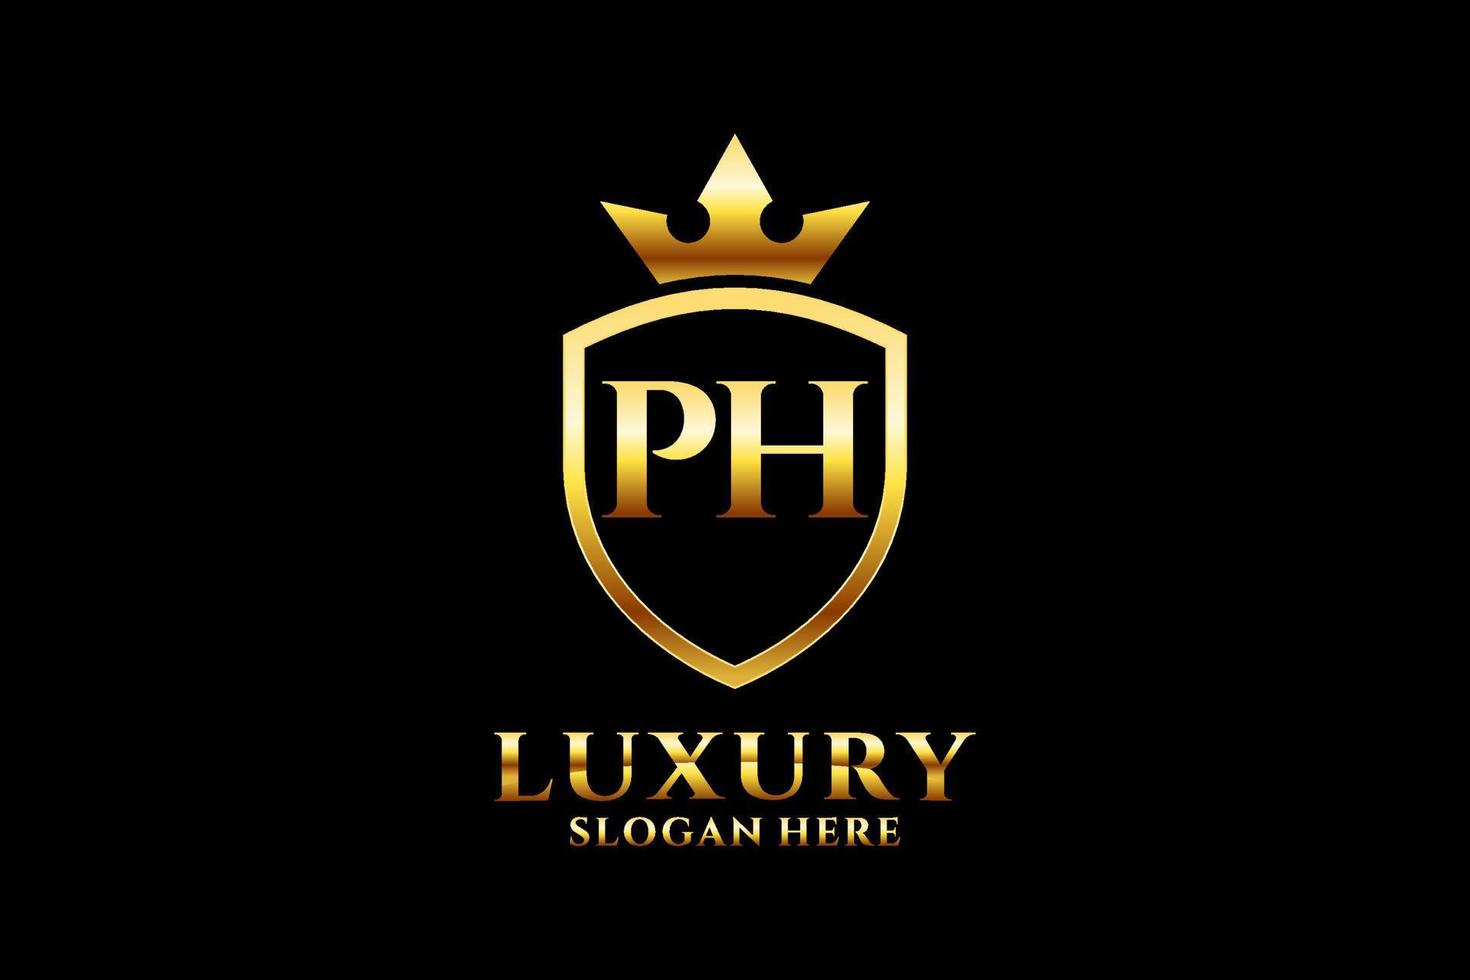 logo monogramme de luxe élégant initial ph ou modèle de badge avec volutes et couronne royale - parfait pour les projets de marque de luxe vecteur